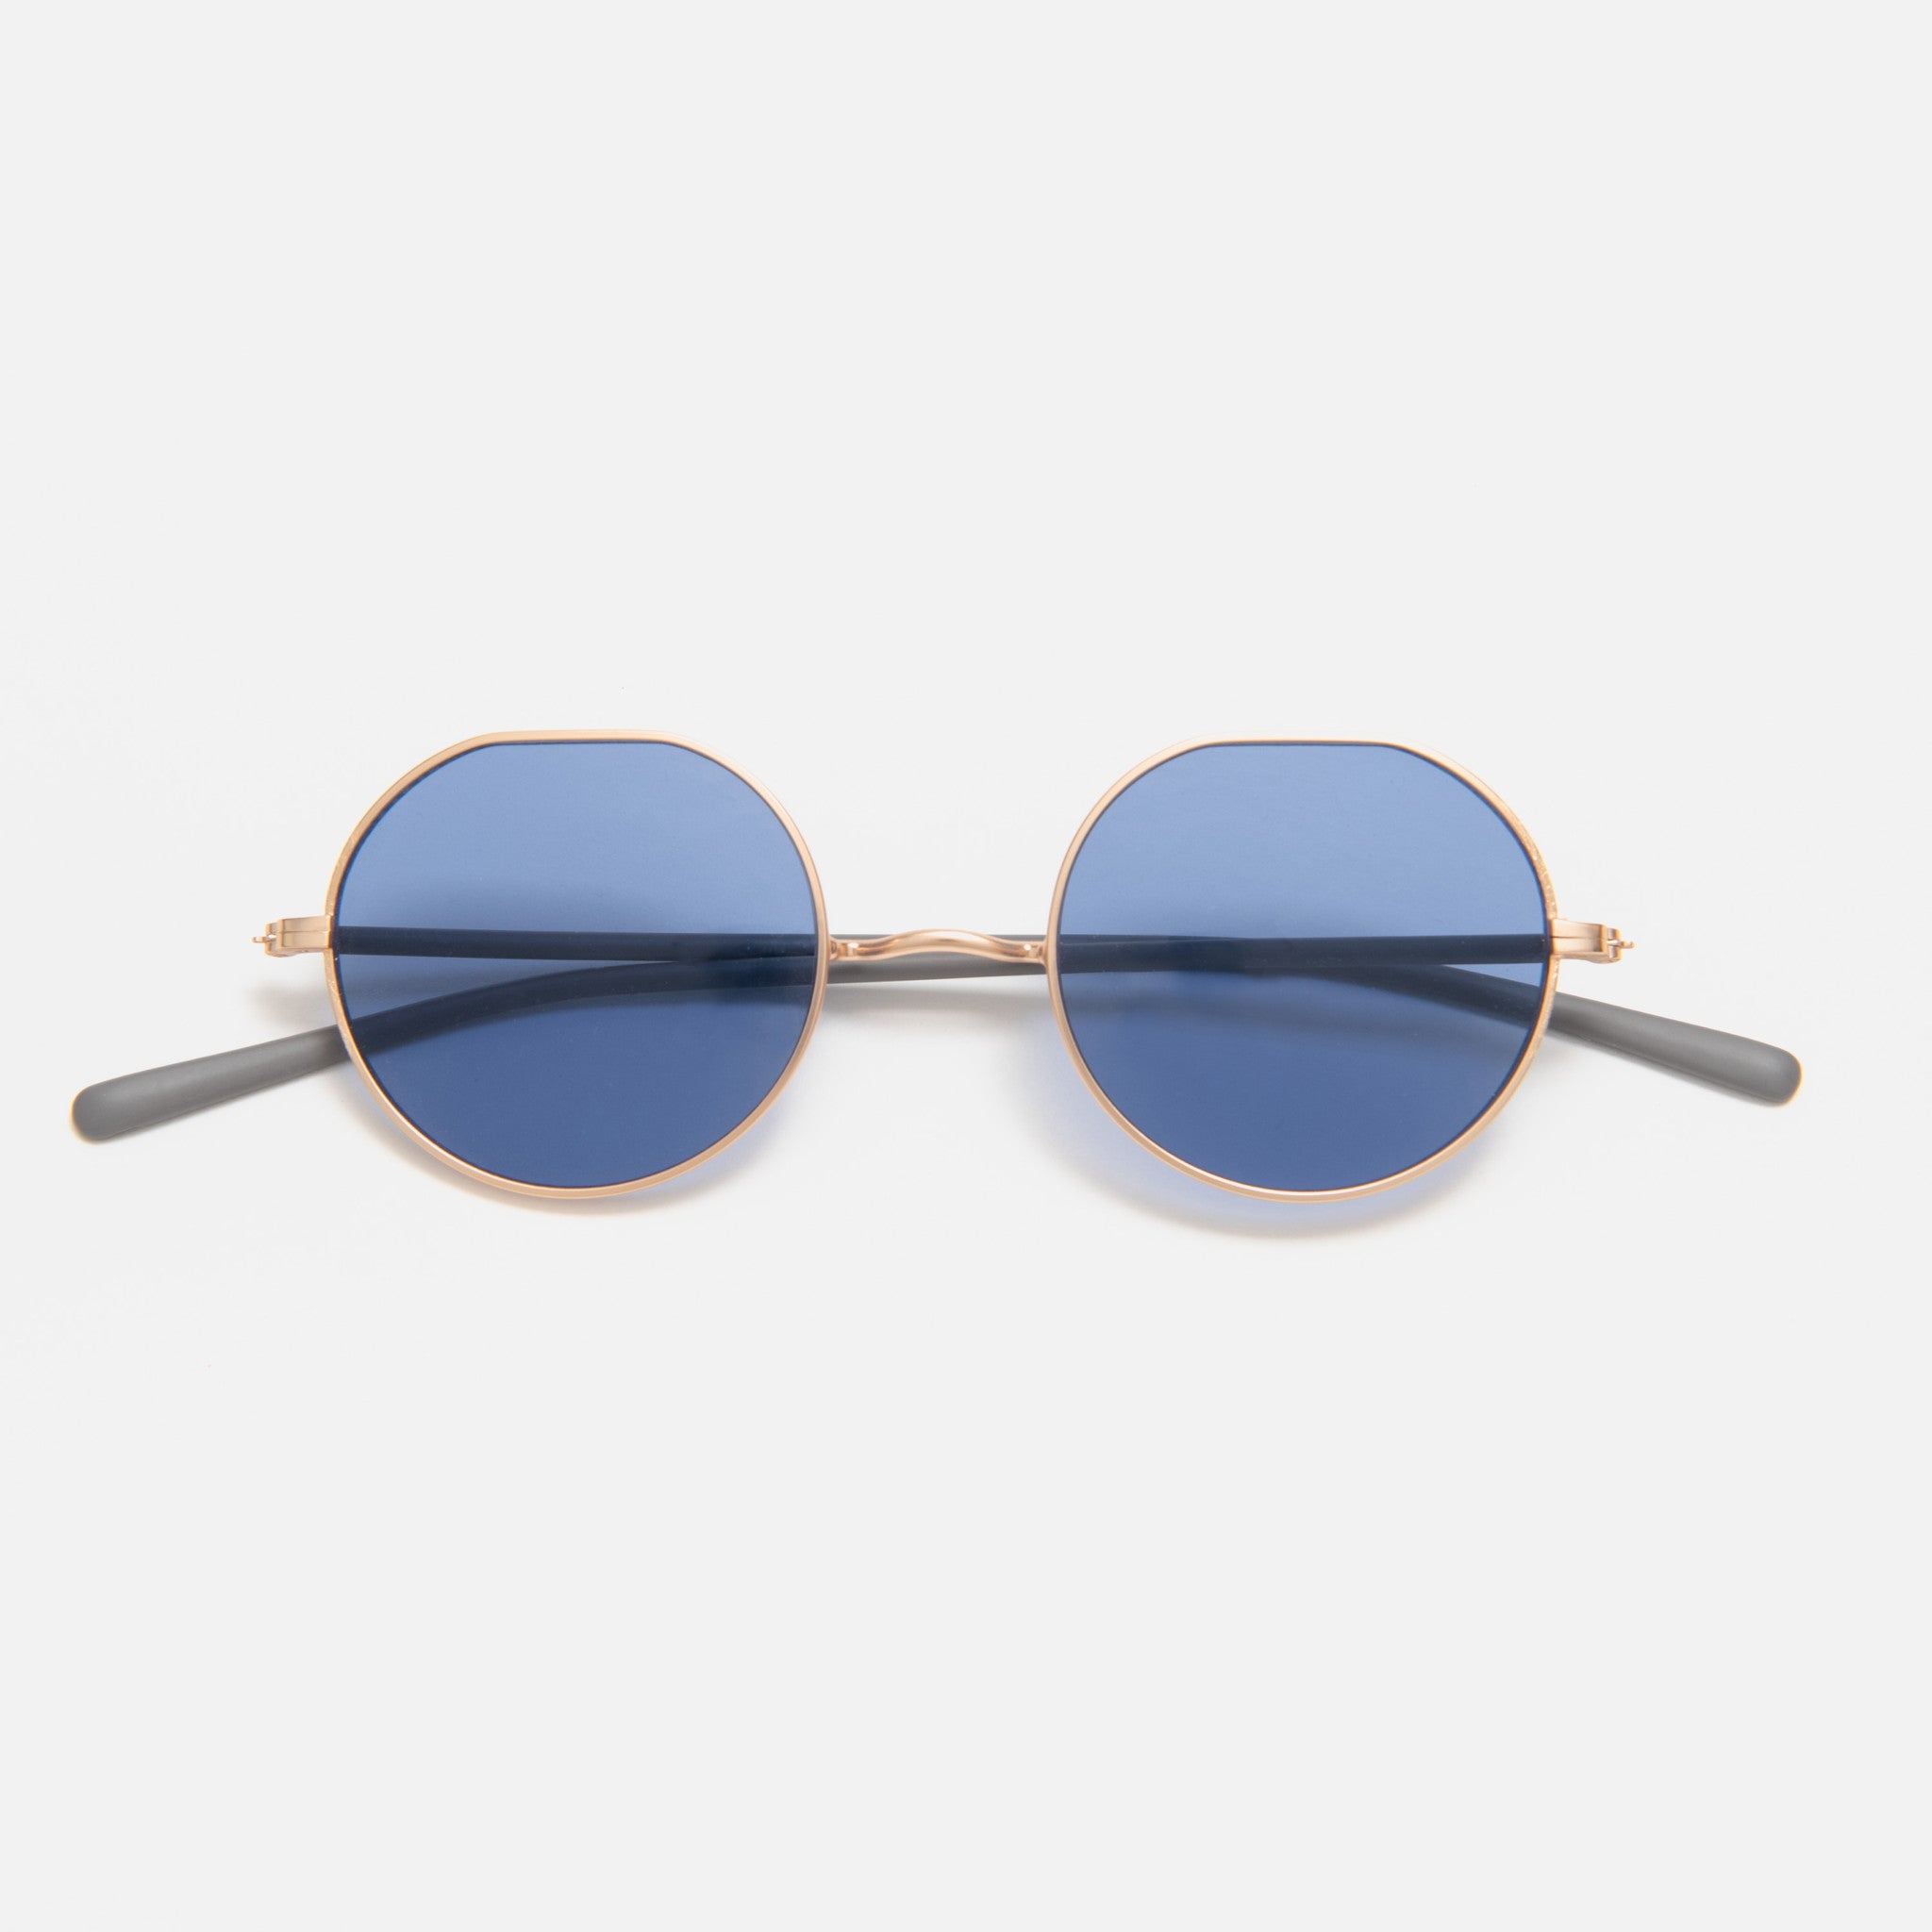 【Ciqi】WELLER サングラス Slate Gray Blue Lens sunglasses(ウェラー スレートグレー ブルーレンズ)